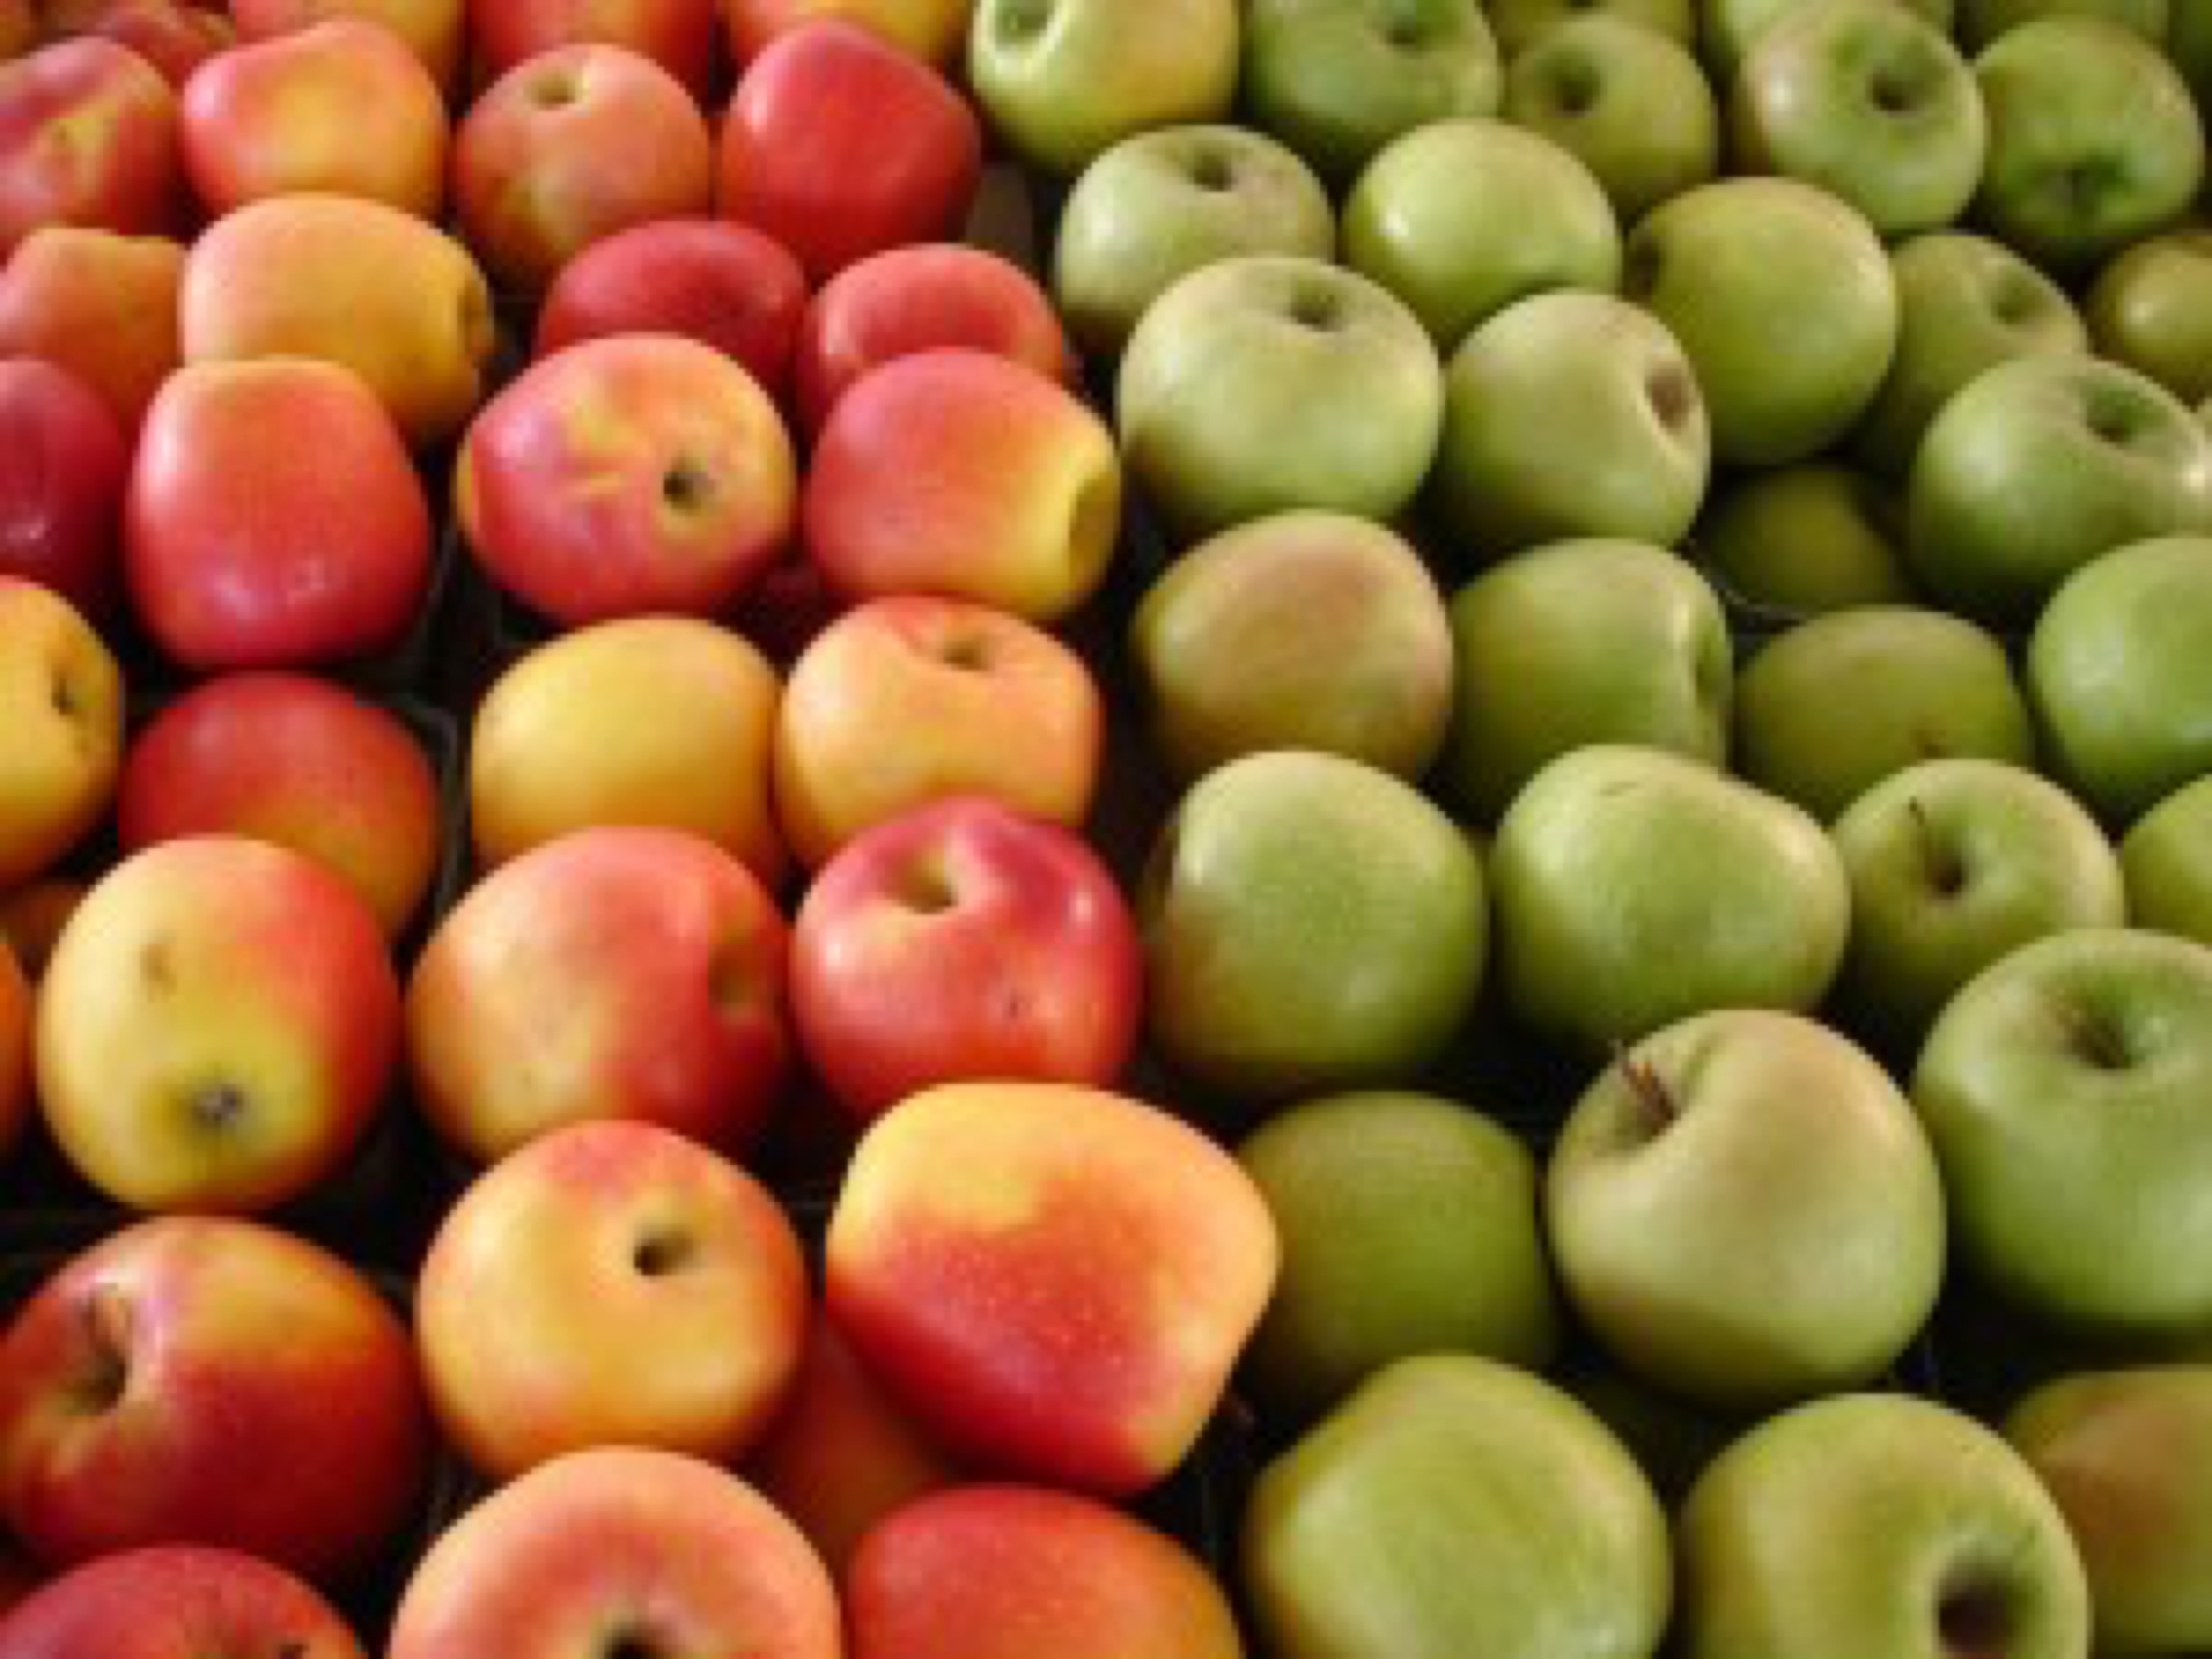 blog image - apples